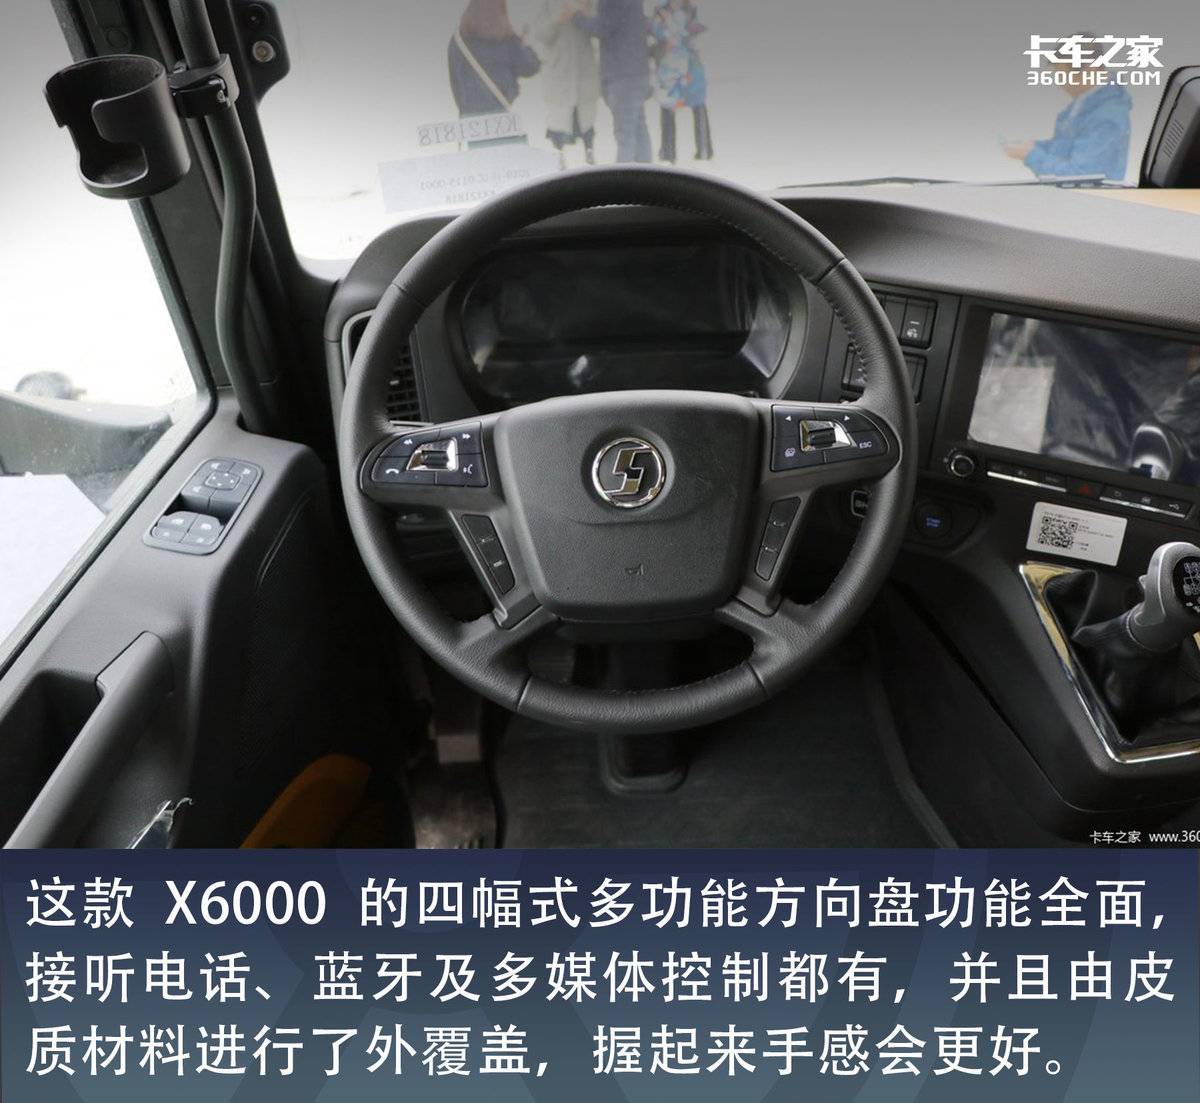 问鼎高端干线物流市场 这款660匹马力的陕汽X6000值得期待